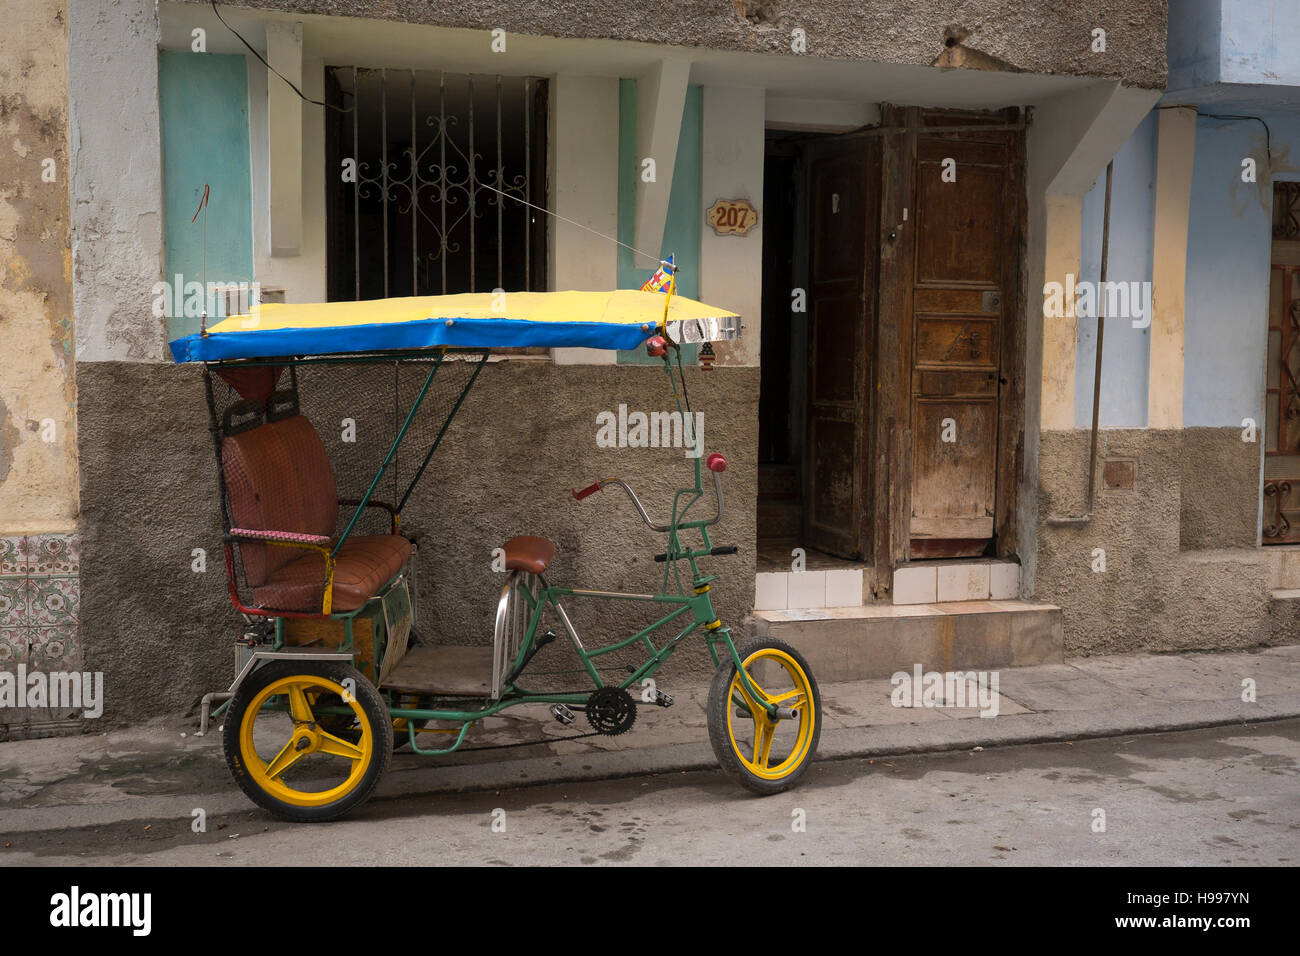 Havana, Cuba: Street scene, Old Havana Stock Photo